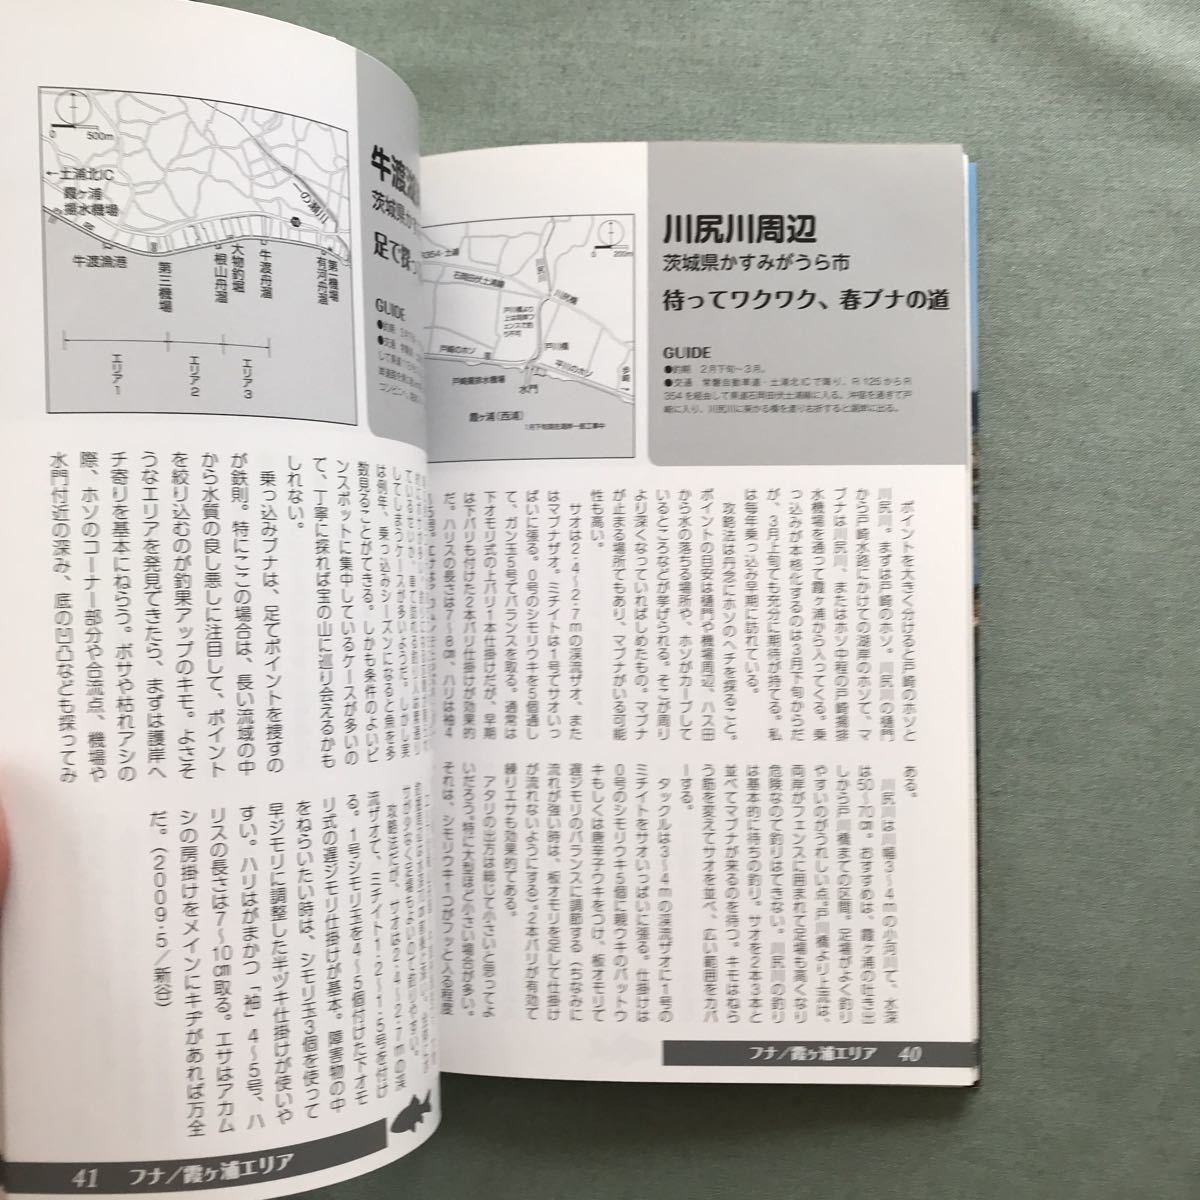 tanago crucian Tokyo outskirts special selection fishing place guide book@tanago fishing crucian fishing tenaga shrimp is ze Saitama Chiba river fishing 